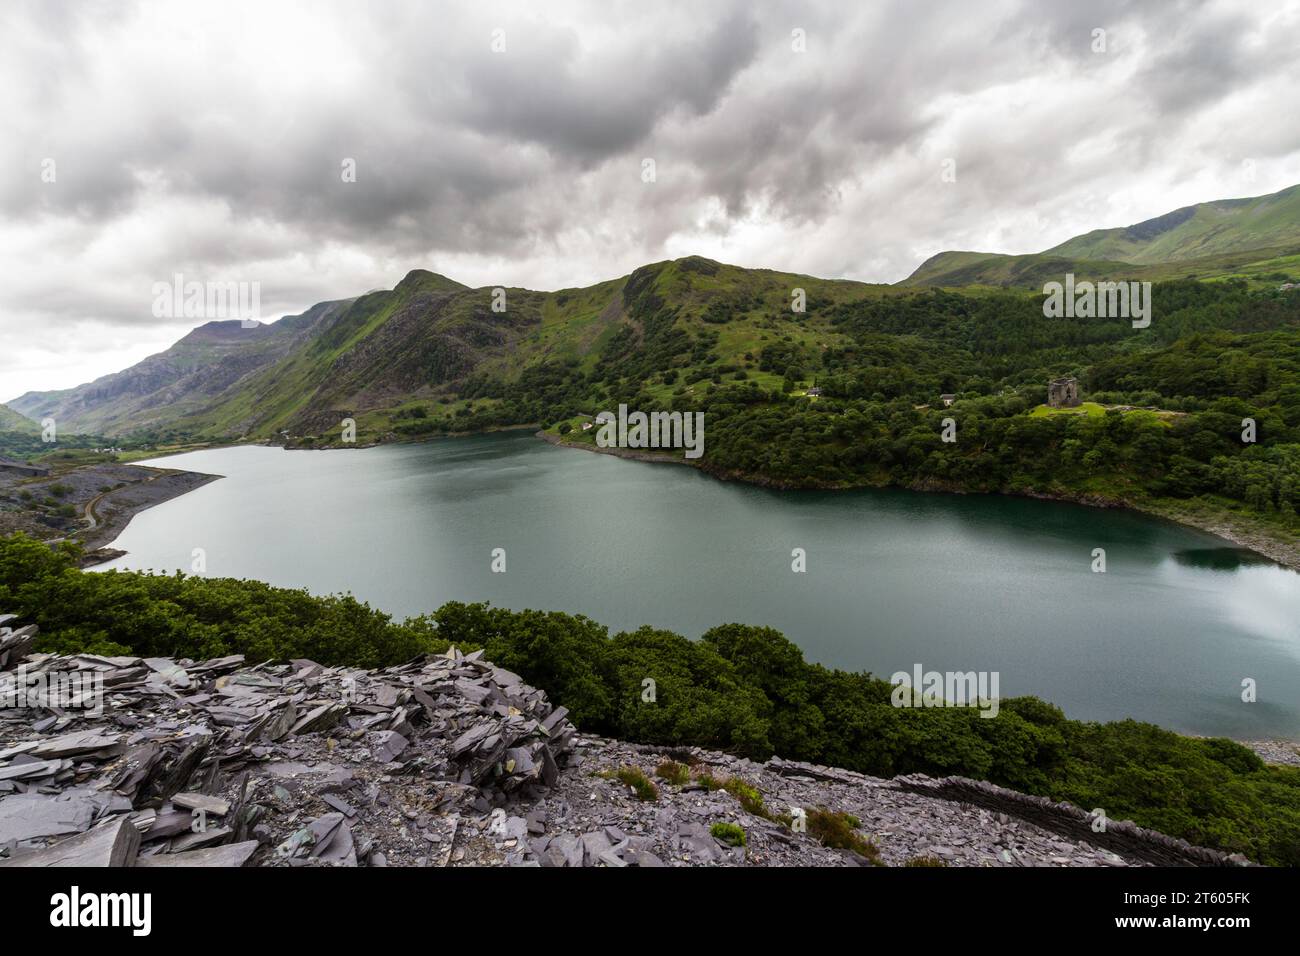 Llyn o Lago Peris de la cantera de pizarra Dinorwic, Llanberis, Snowdonia o Parque Nacional Eryri, Norte de Gales, Reino Unido, paisaje, mirando hacia el este Foto de stock